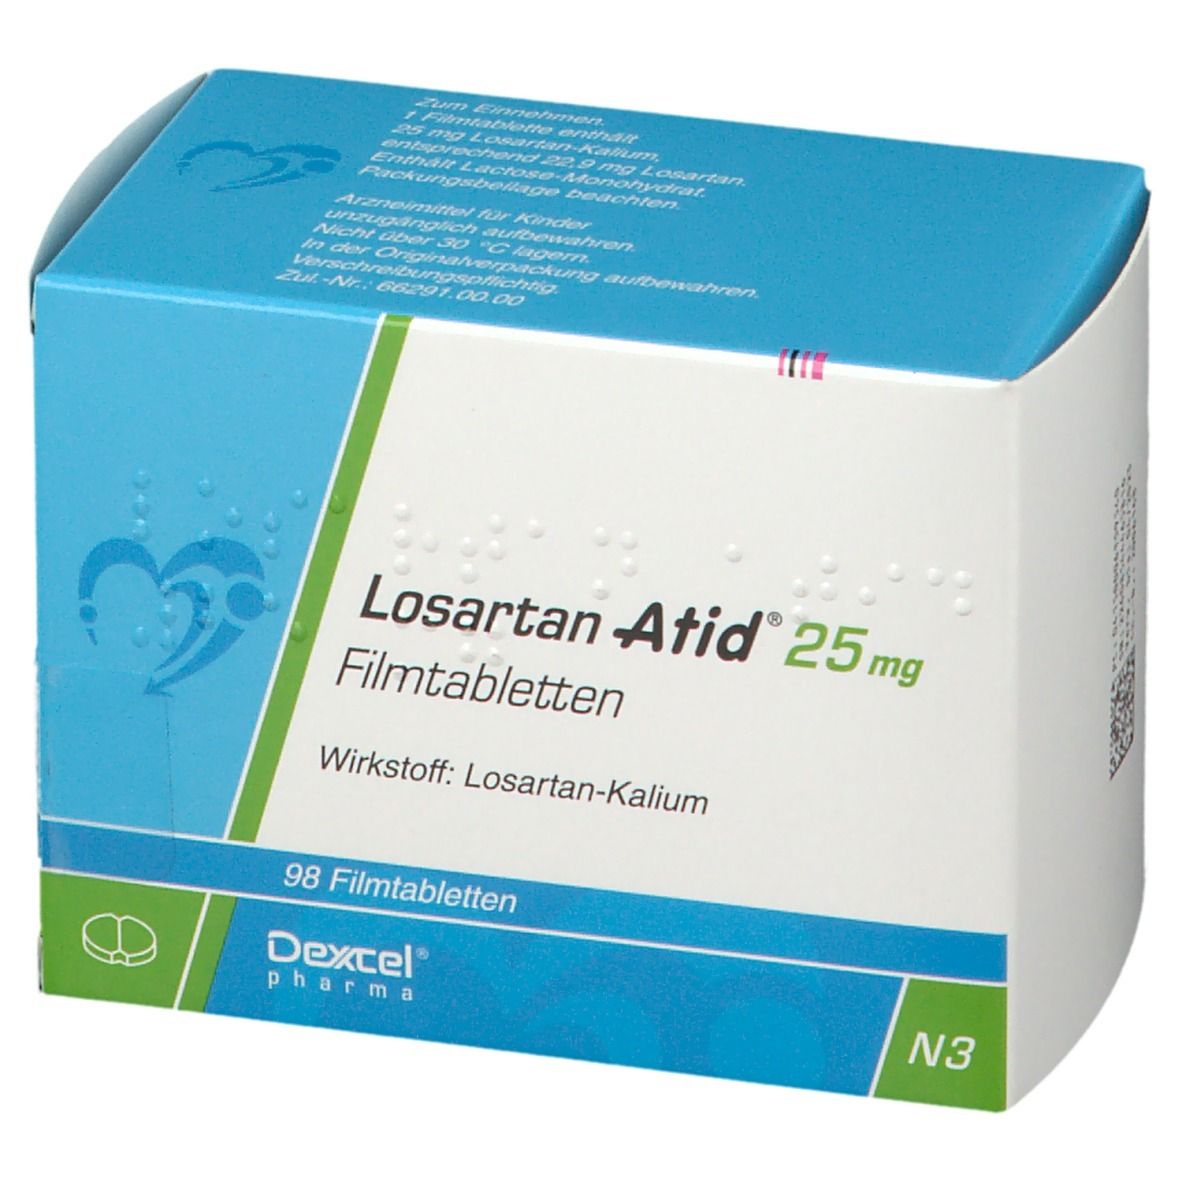 Losartan Atid® 25 mg